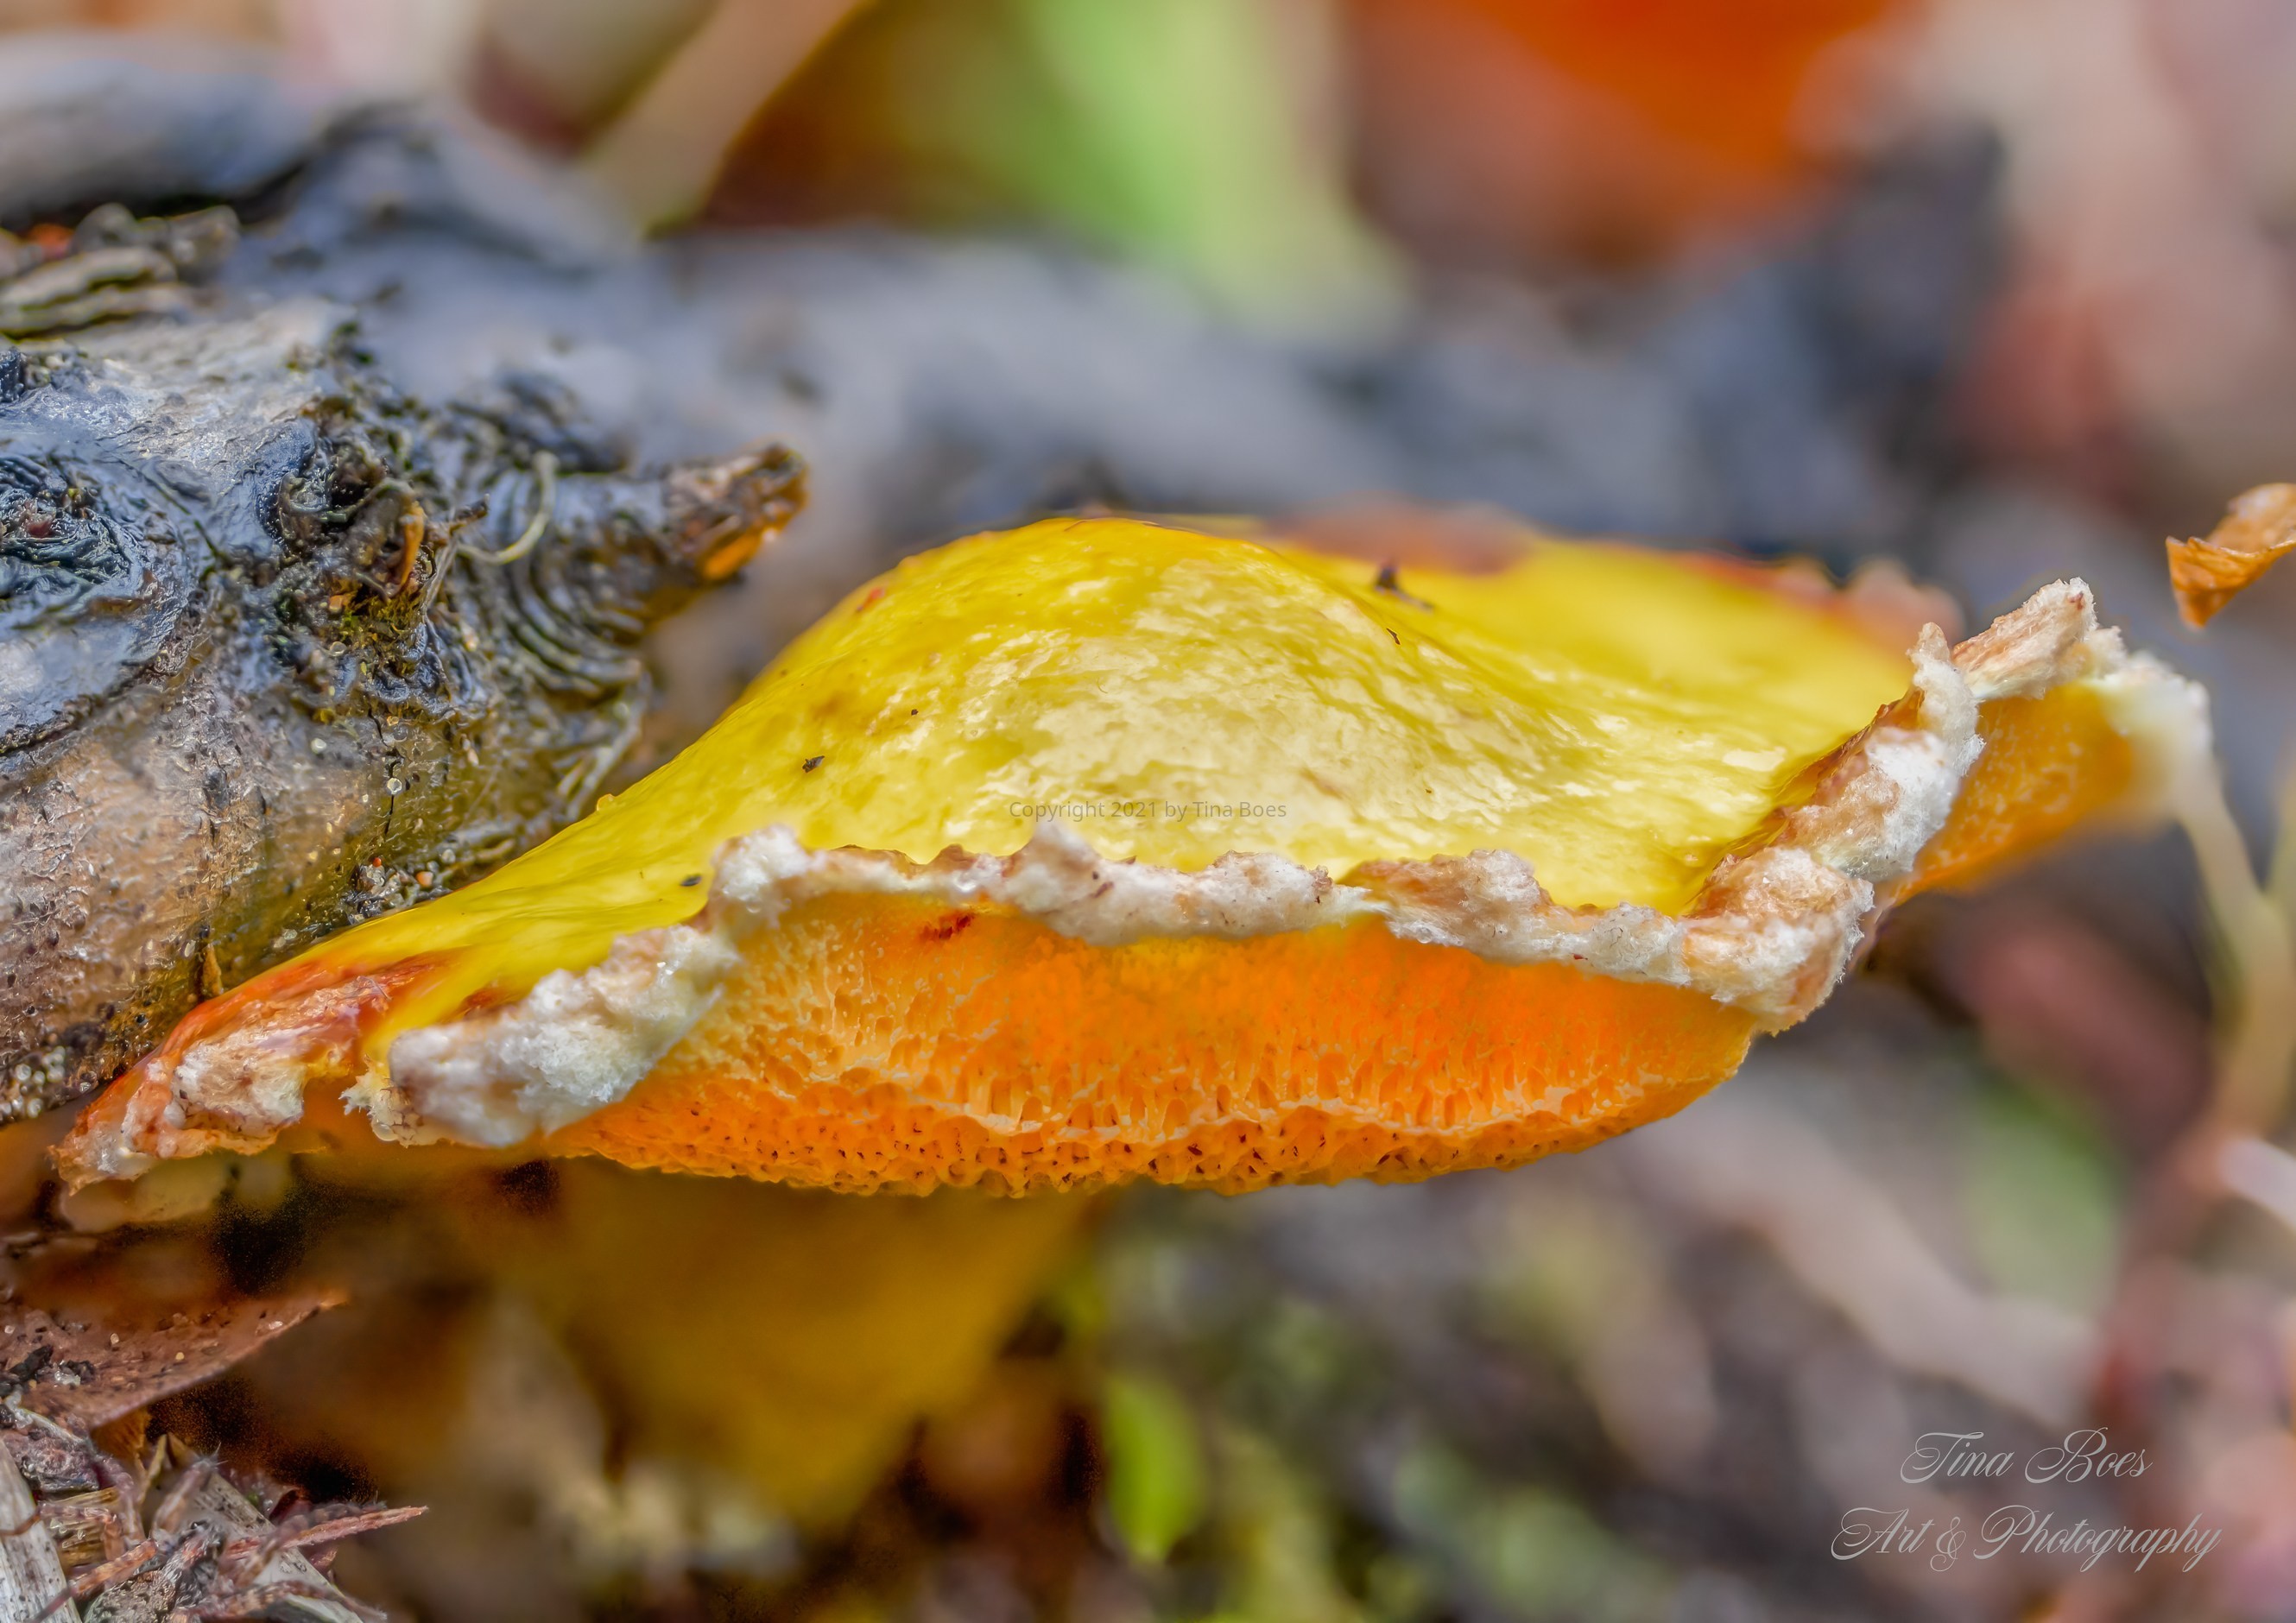 Orange slice mushroom.jpg